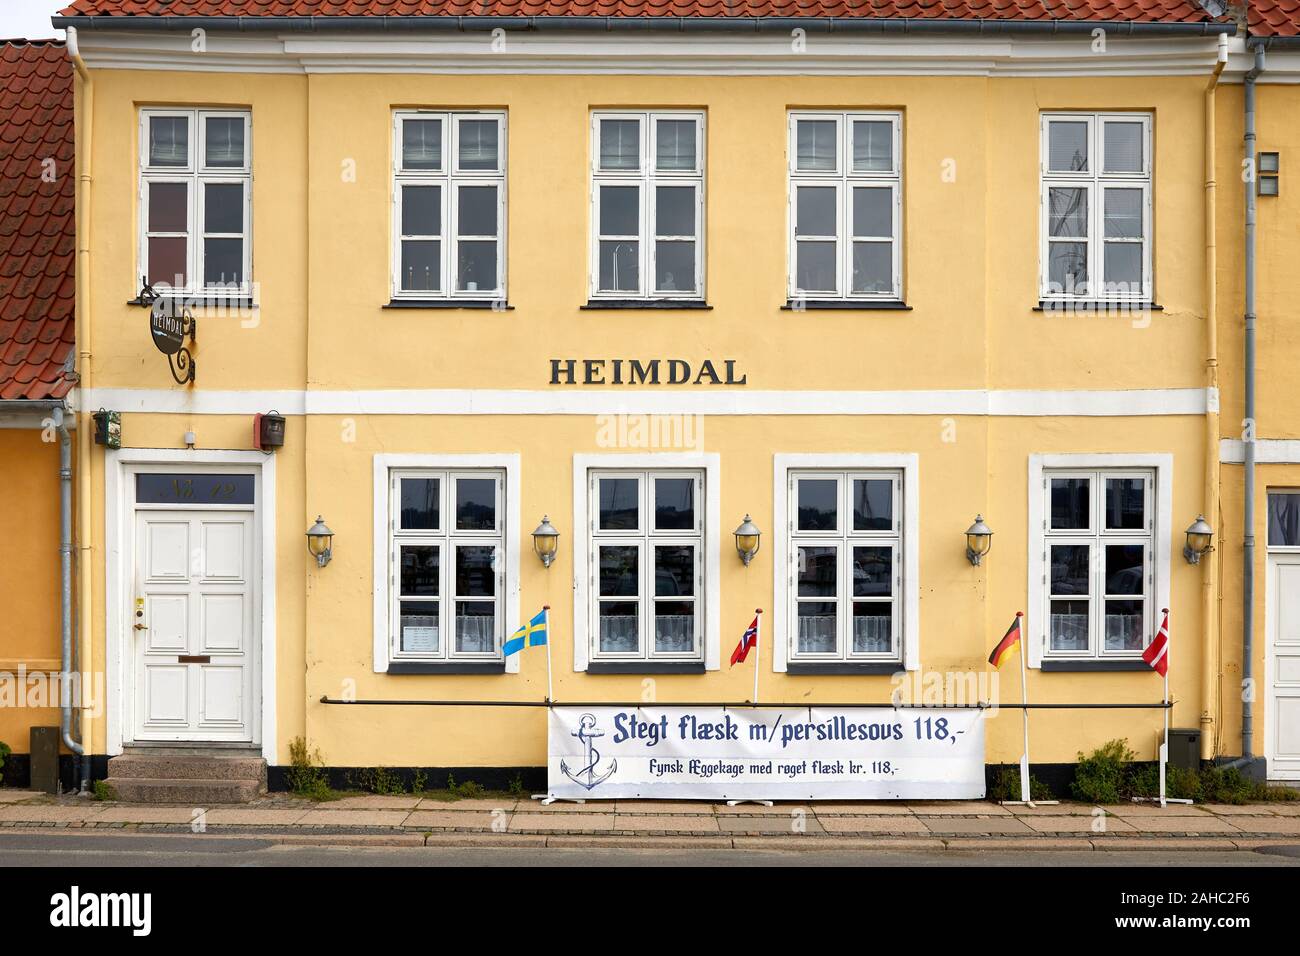 Heimdal, restaurant serving traditional dishes from Denmark/Funen; Faaborg, Funen, Denmark Stock Photo